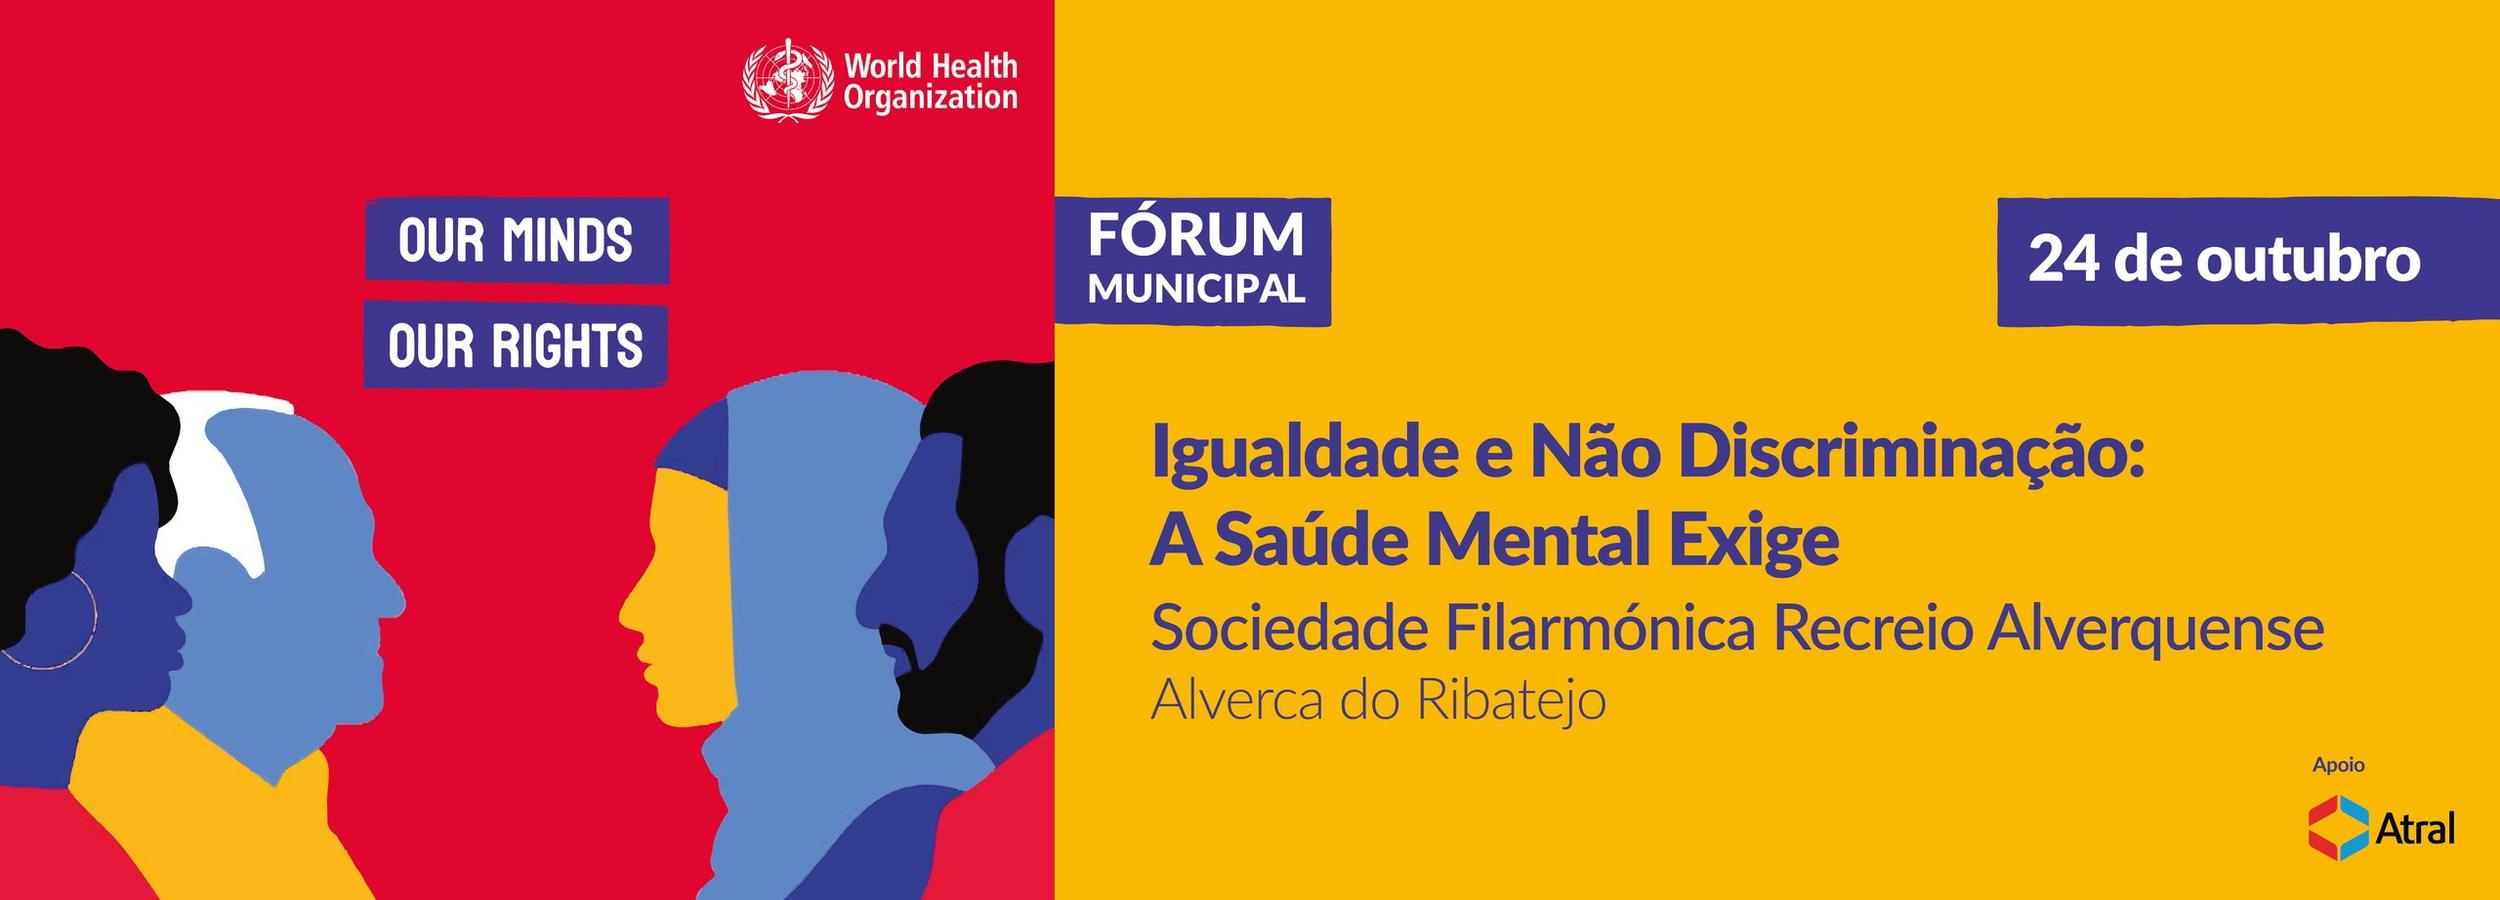 Fórum debate “Igualdade e Não Discriminação: A Saúde Mental Exige”